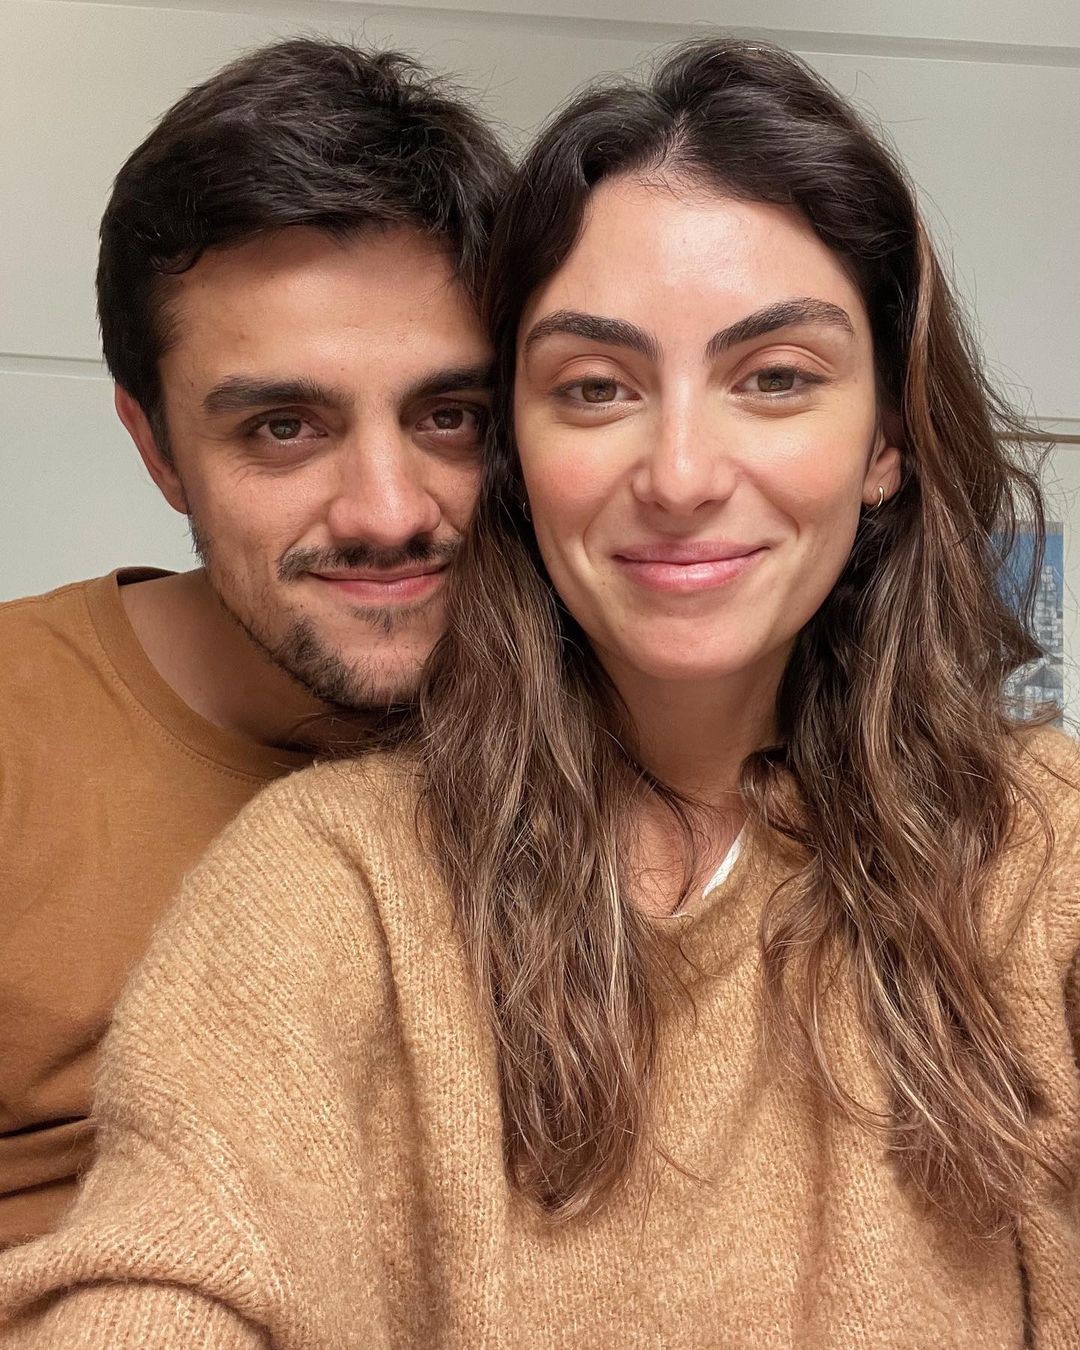 Fofoca edifica ou magoa? Mariana Uhlmann e Felipe Simas fazem reflexão sobre fofoca (Foto: Reprodução/Instagram)